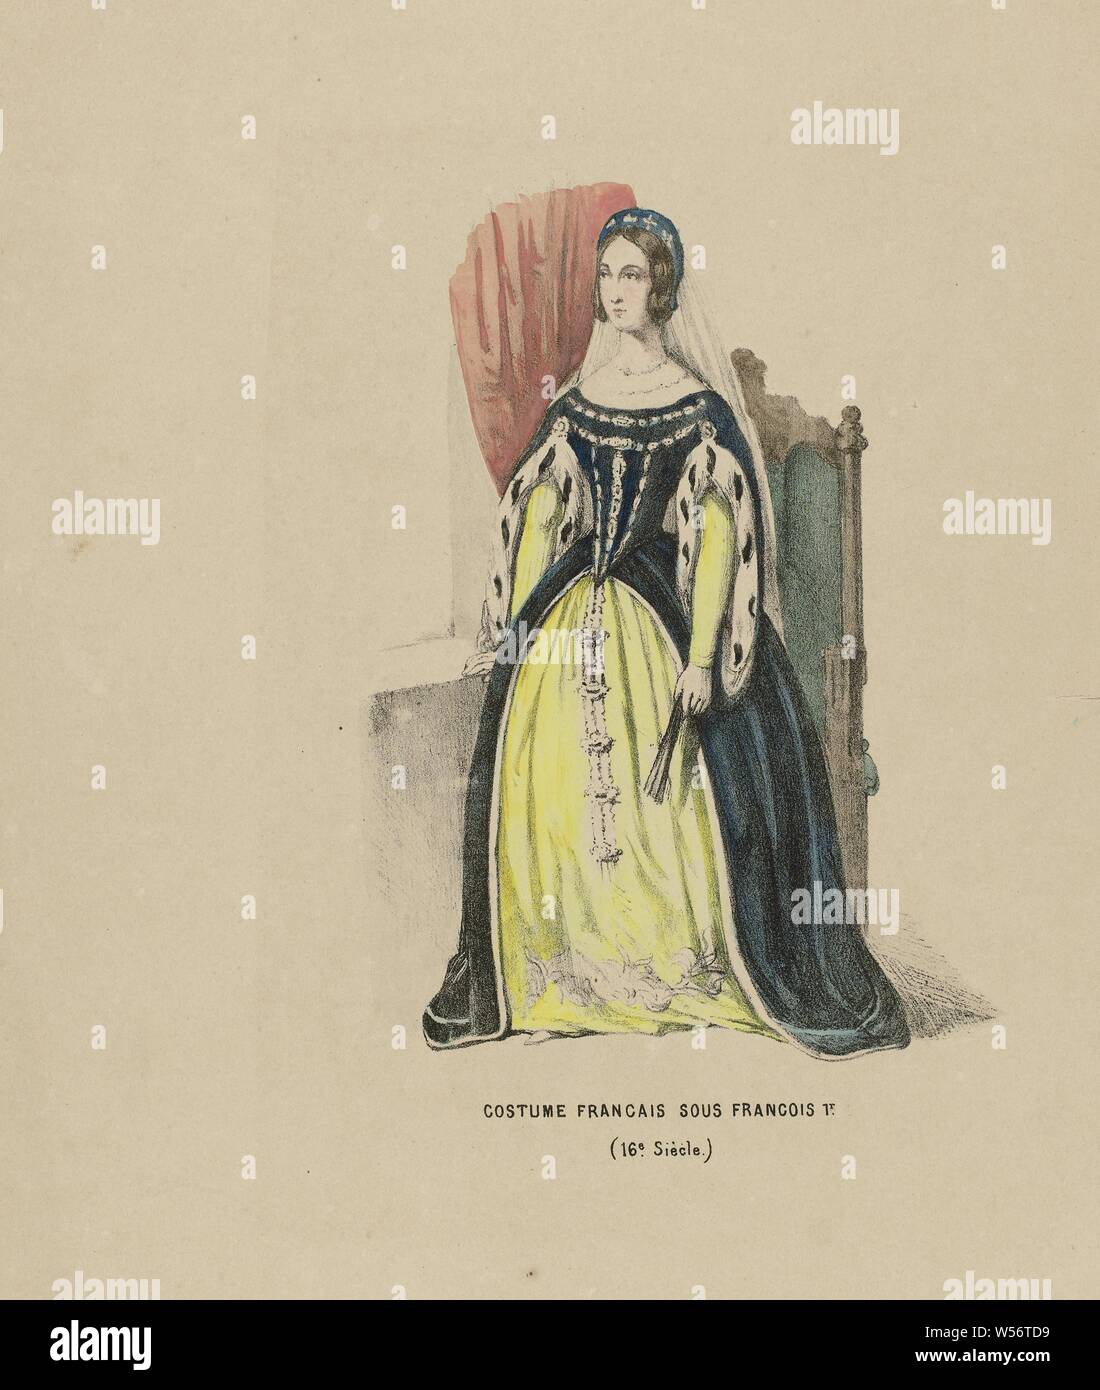 Costume Francais Sous Francois 1er. (16 Siècle) (título de objeto), Mujer  en trajes históricos de una dama de honor en la corte francesa de Francés  I, siglo XVI. Mayor rendimiento para el